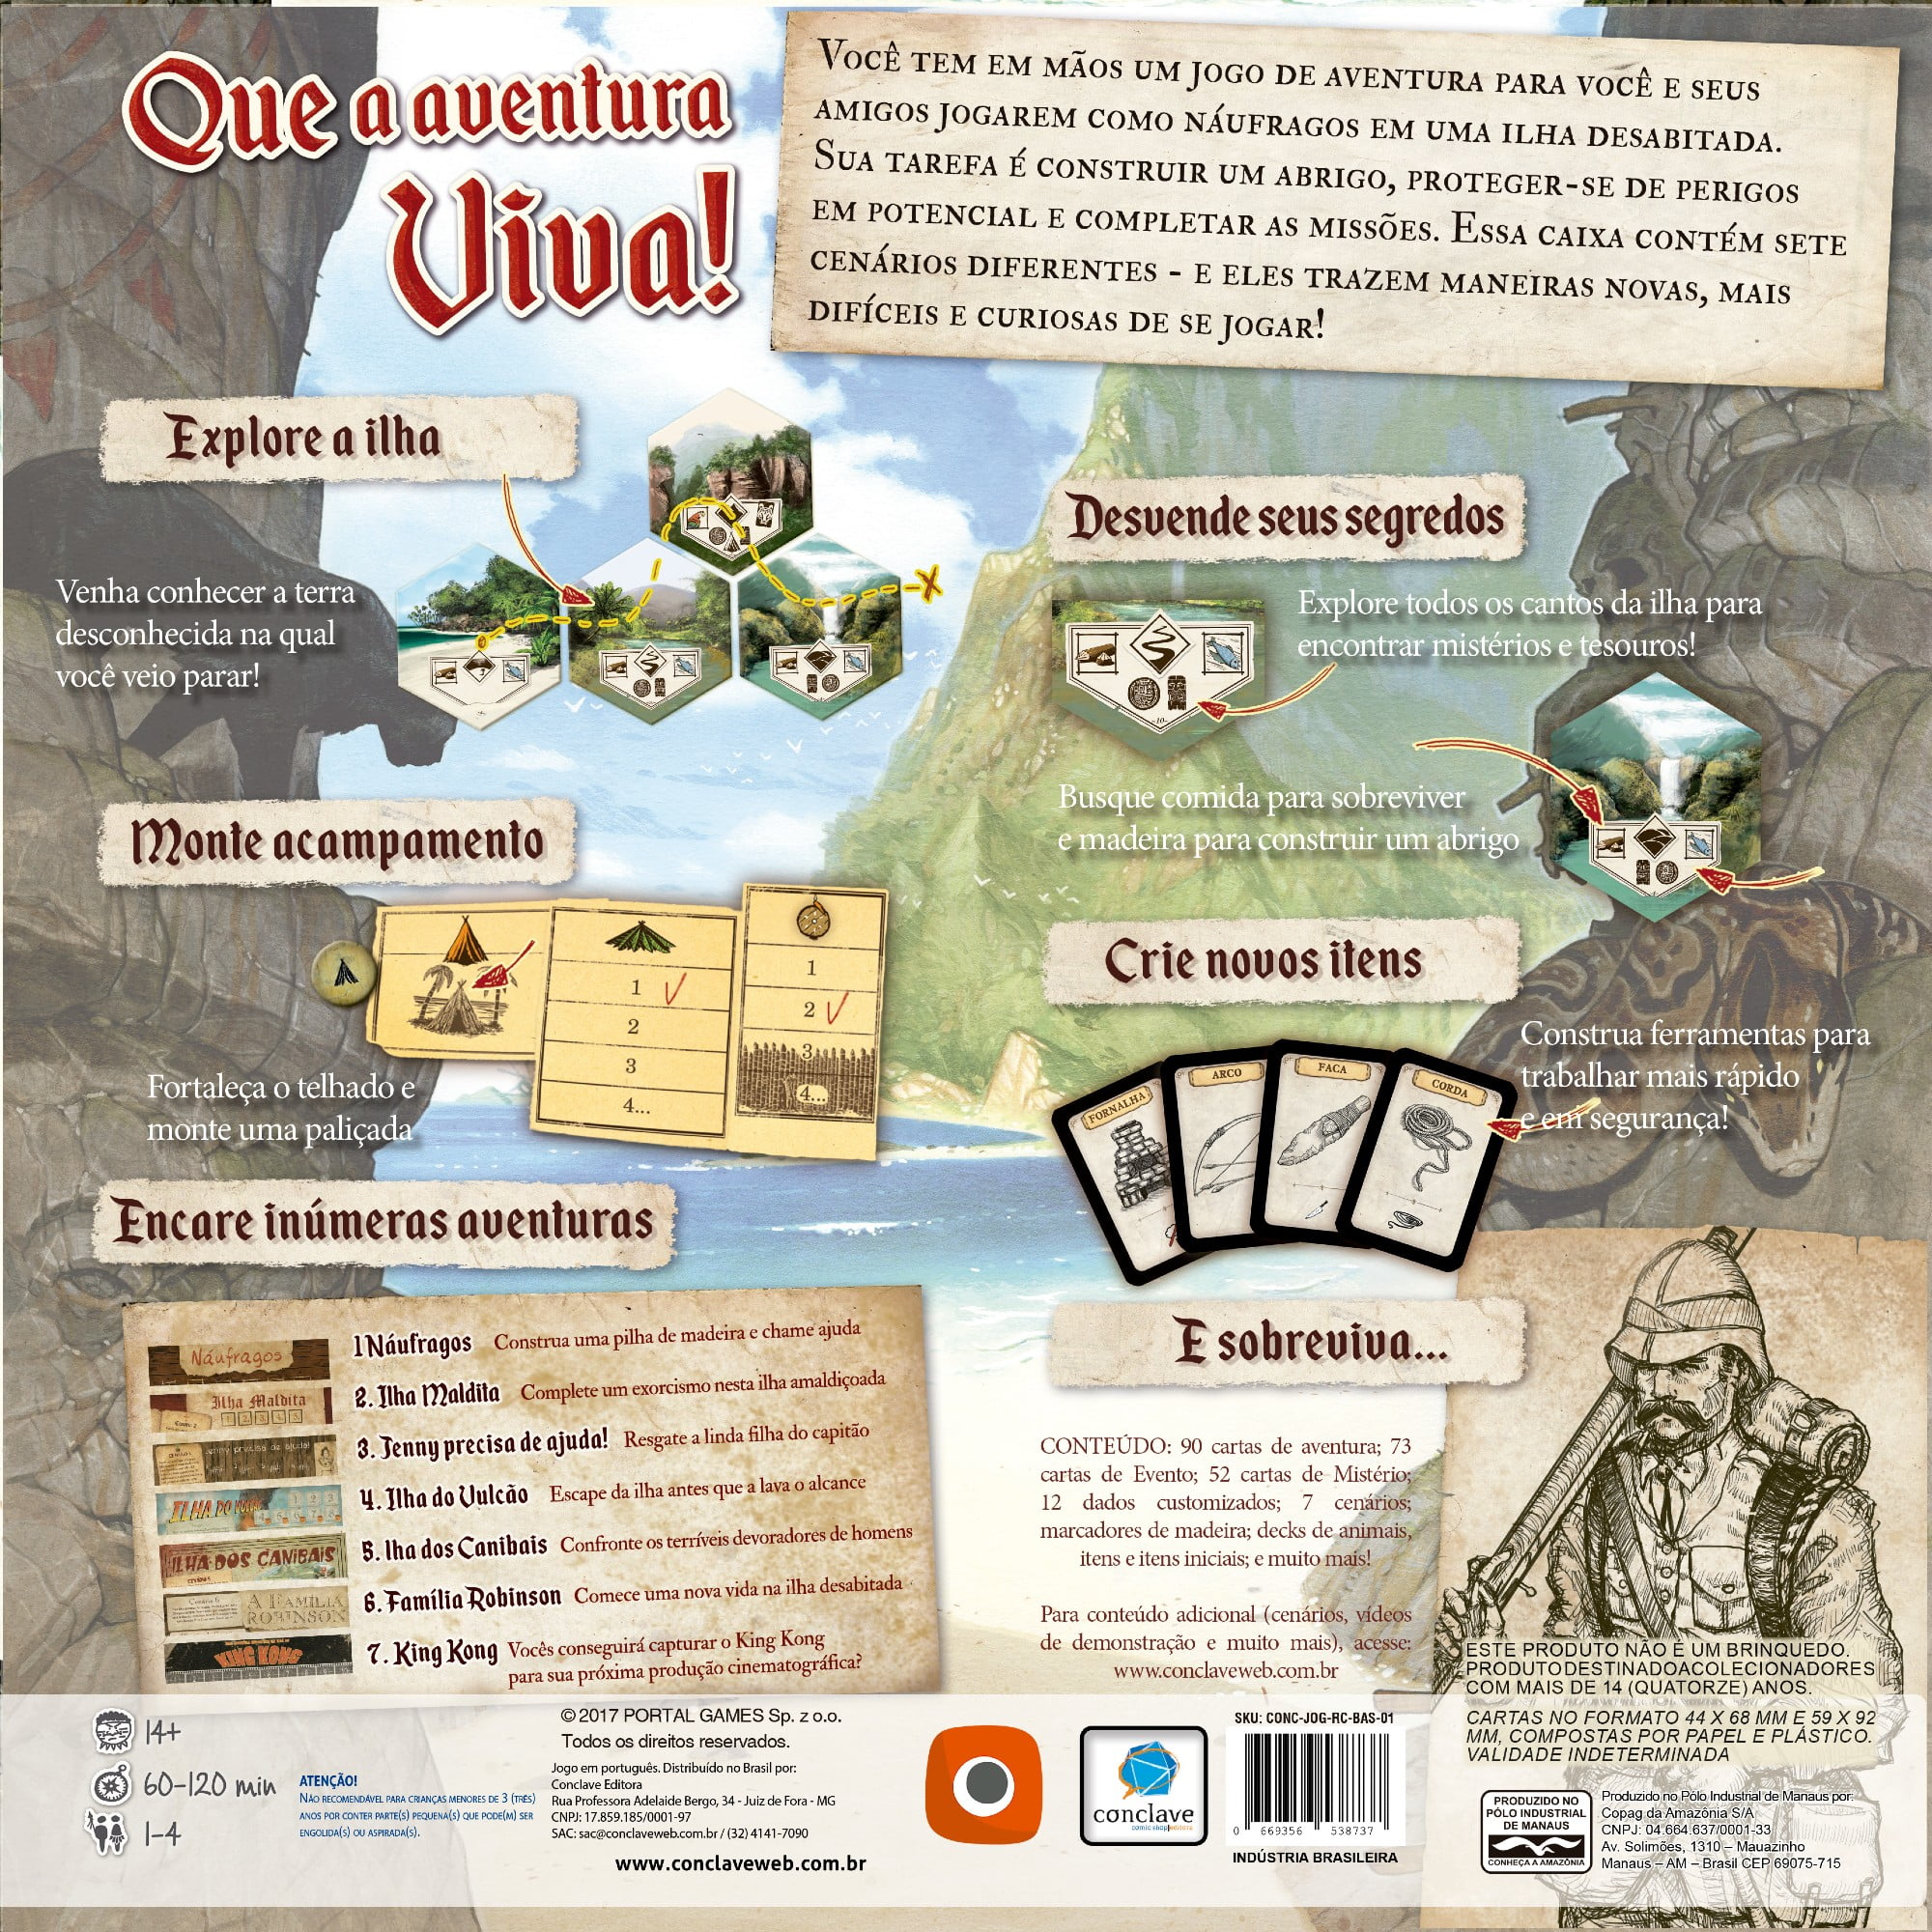 Robinson Crusoé - Aventuras na Ilha Amaldiçoada board game